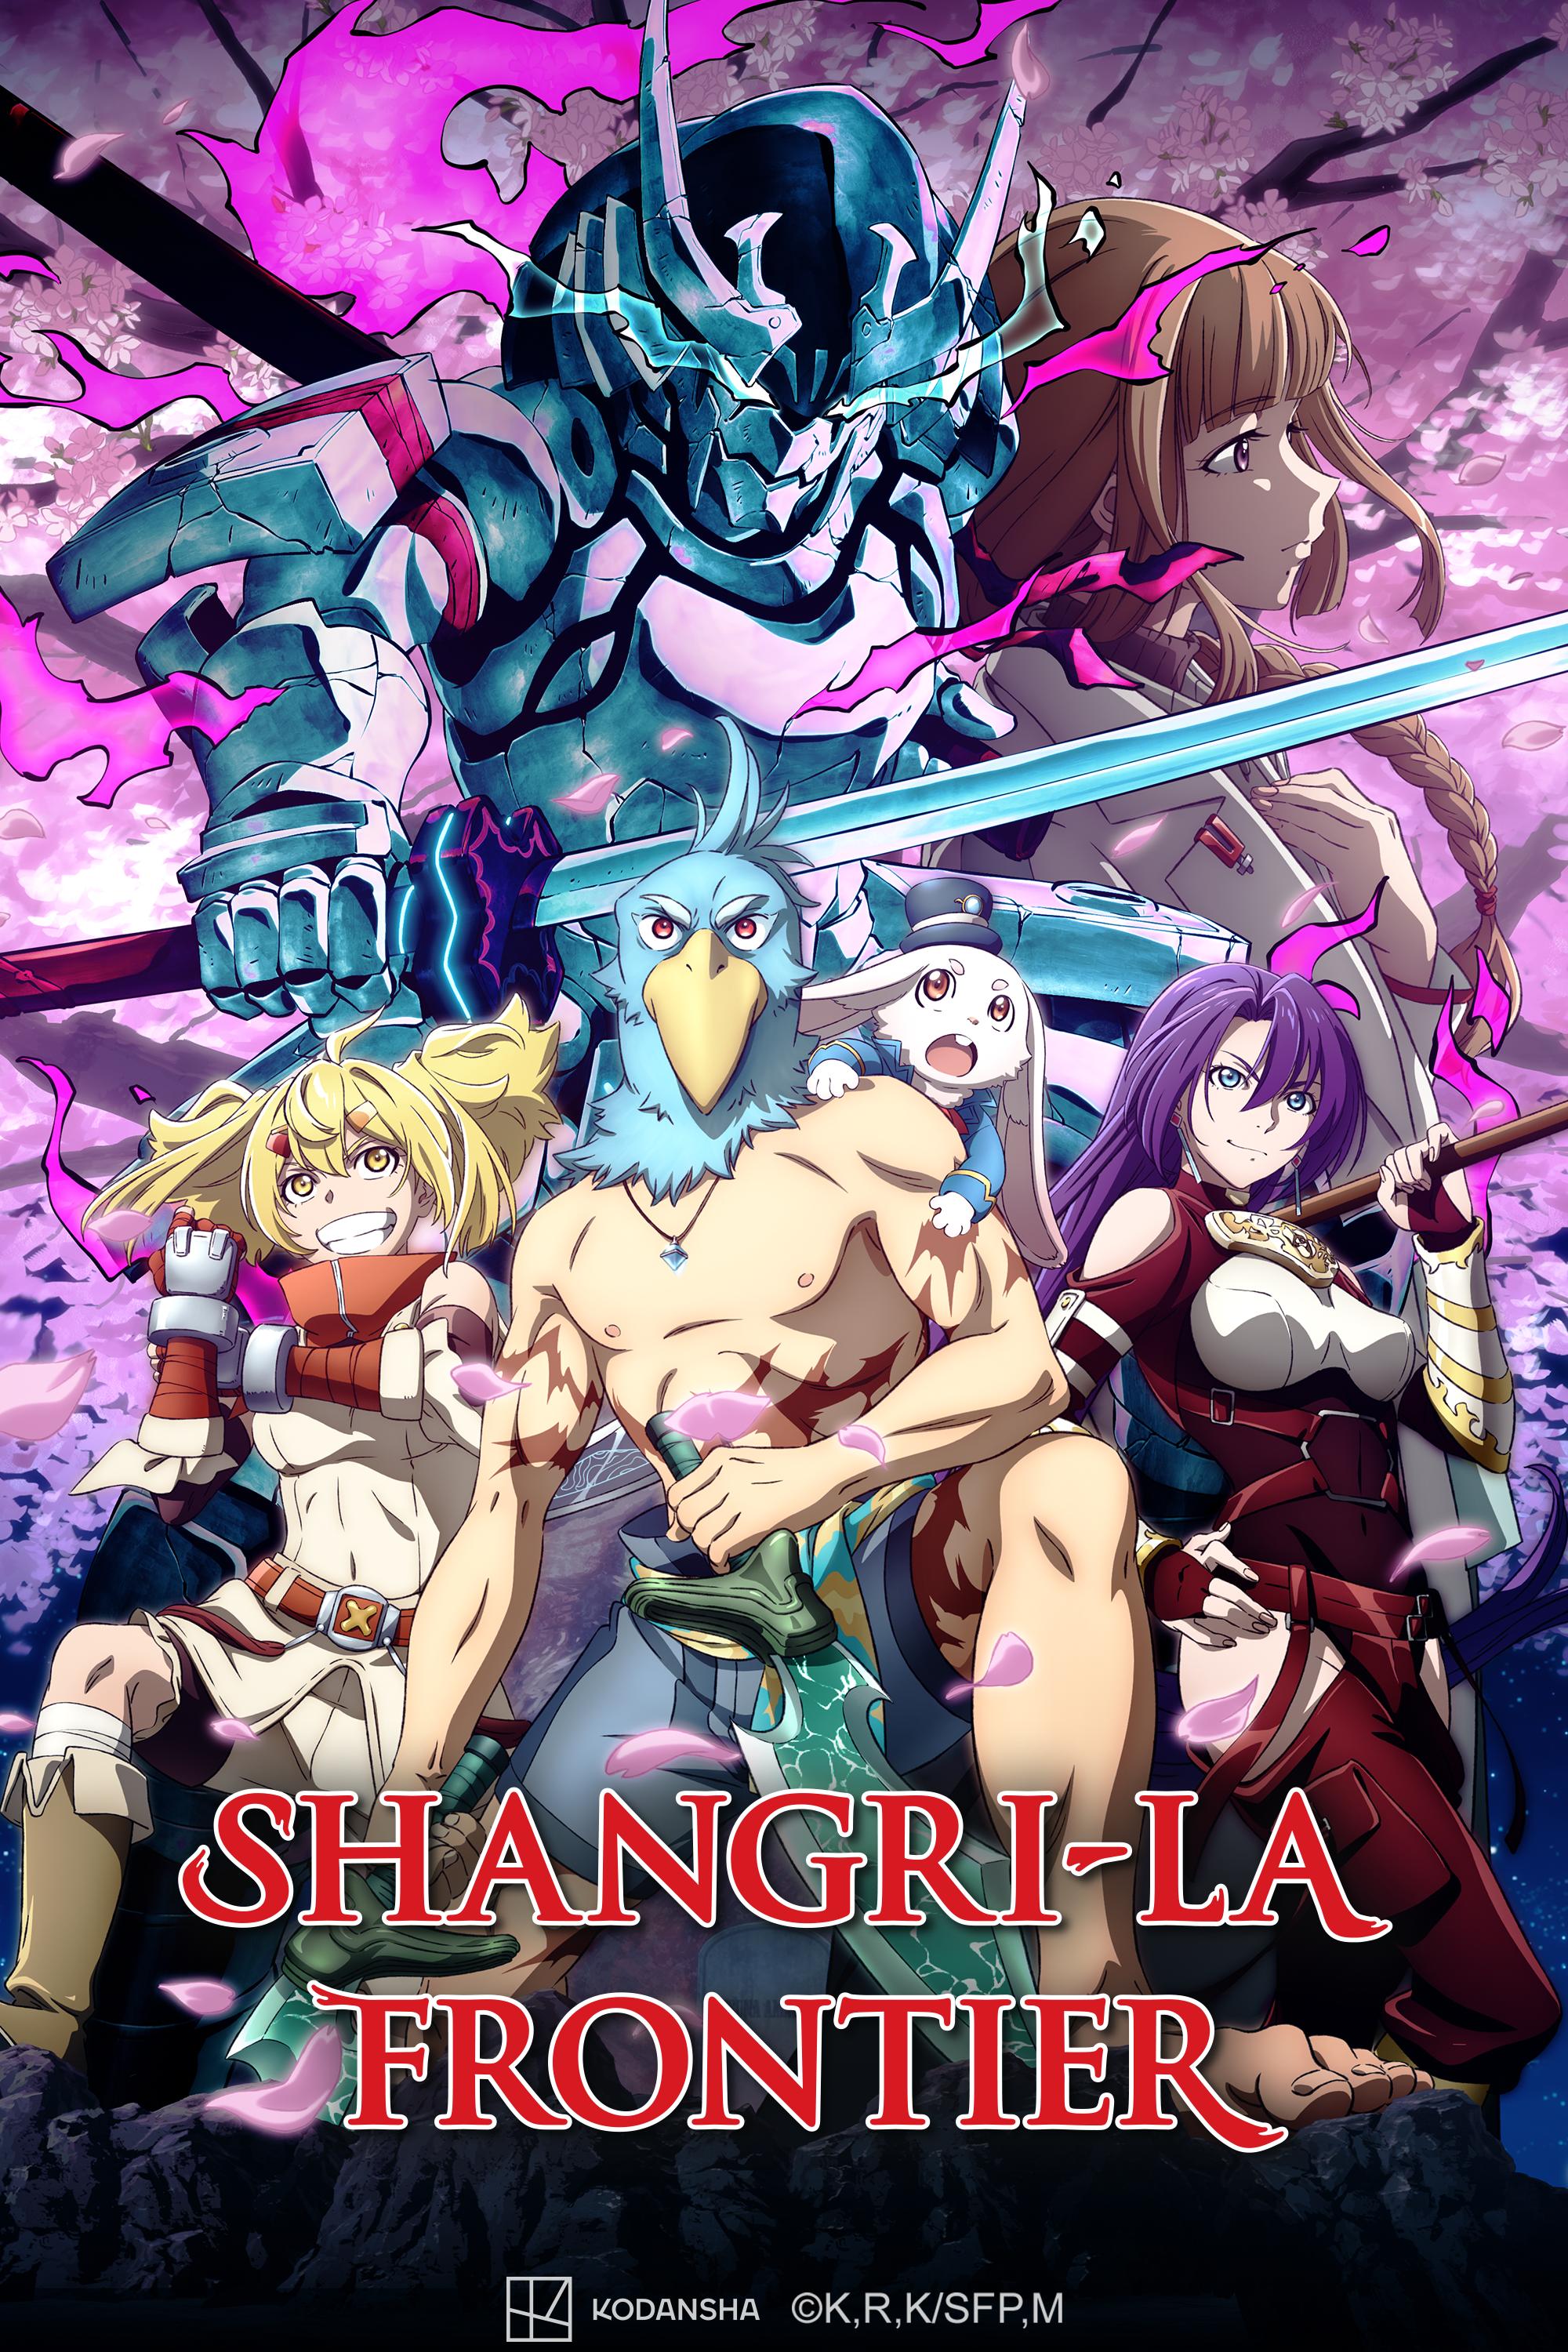 Watch Shangri-La Frontier - Crunchyroll